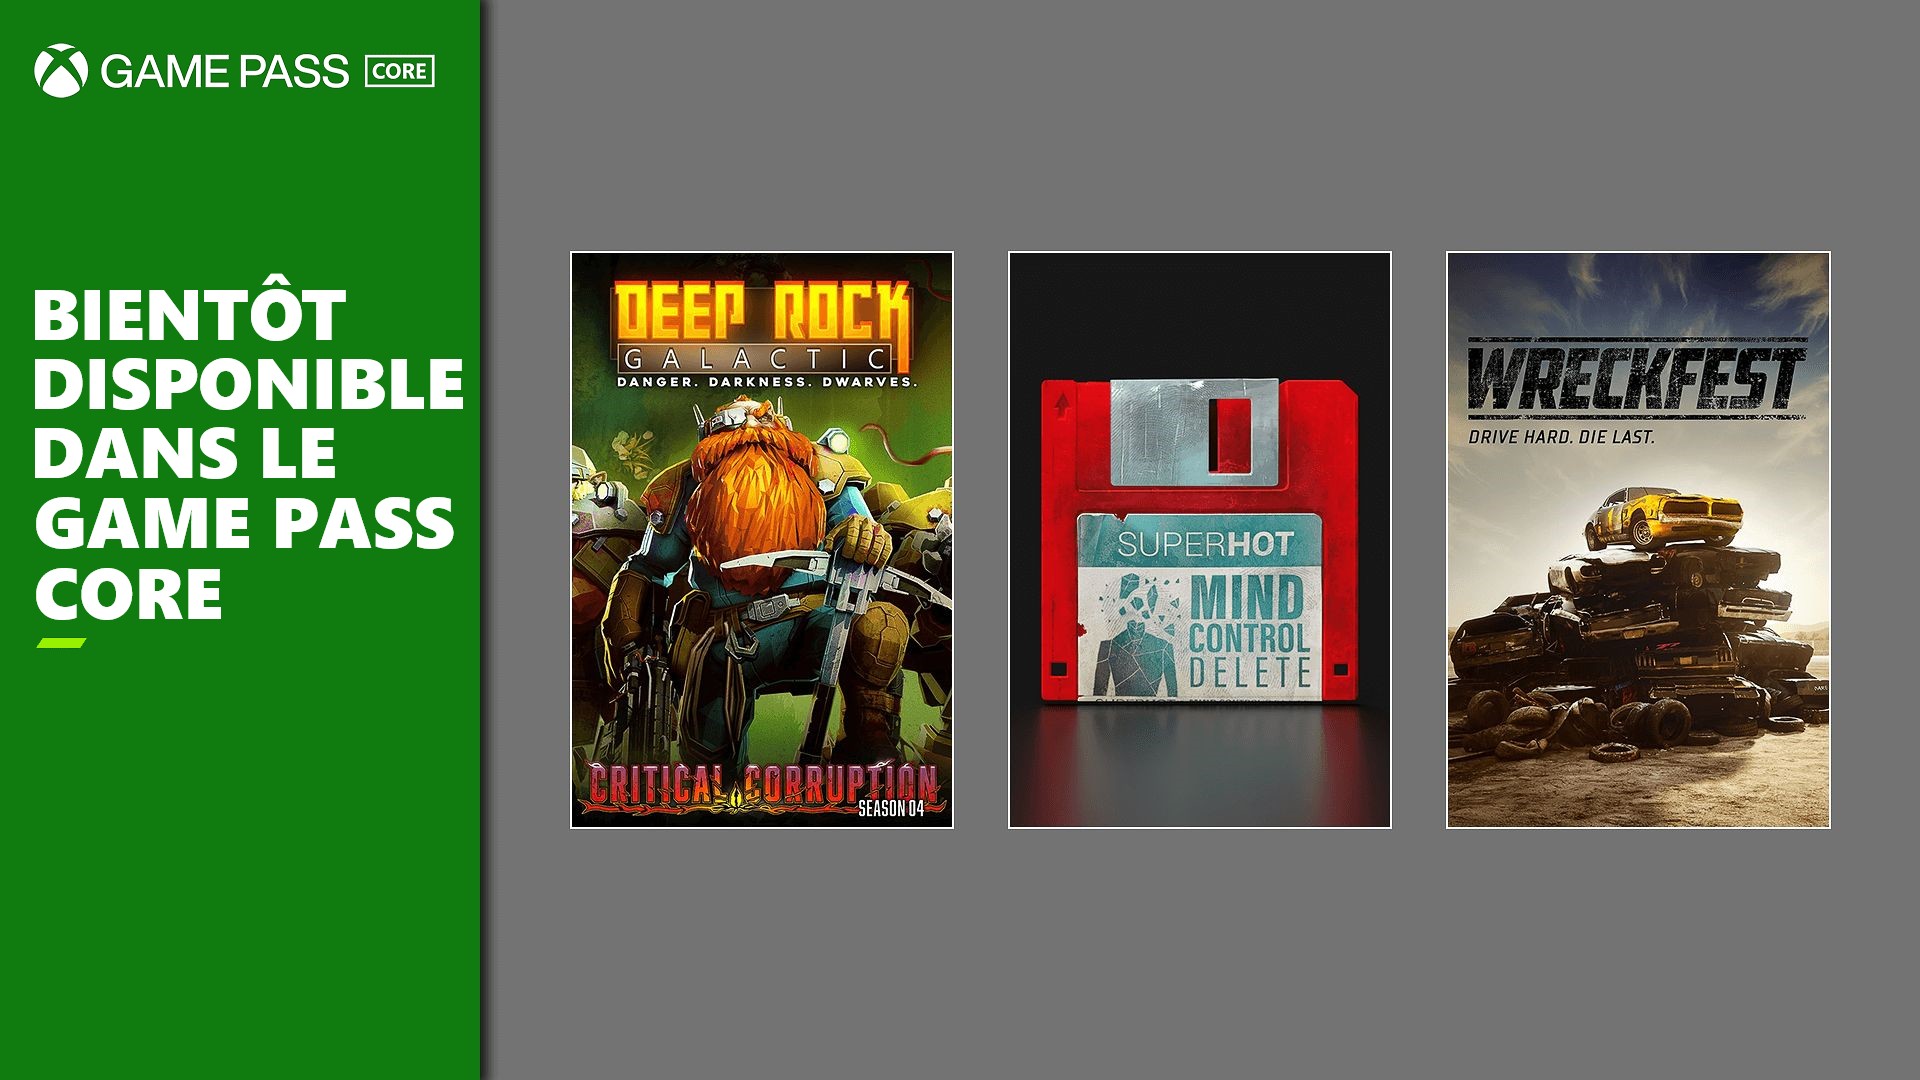 Xbox Game Pass Core : 3 nouveaux jeux sont disponibles, dont Wreckfest